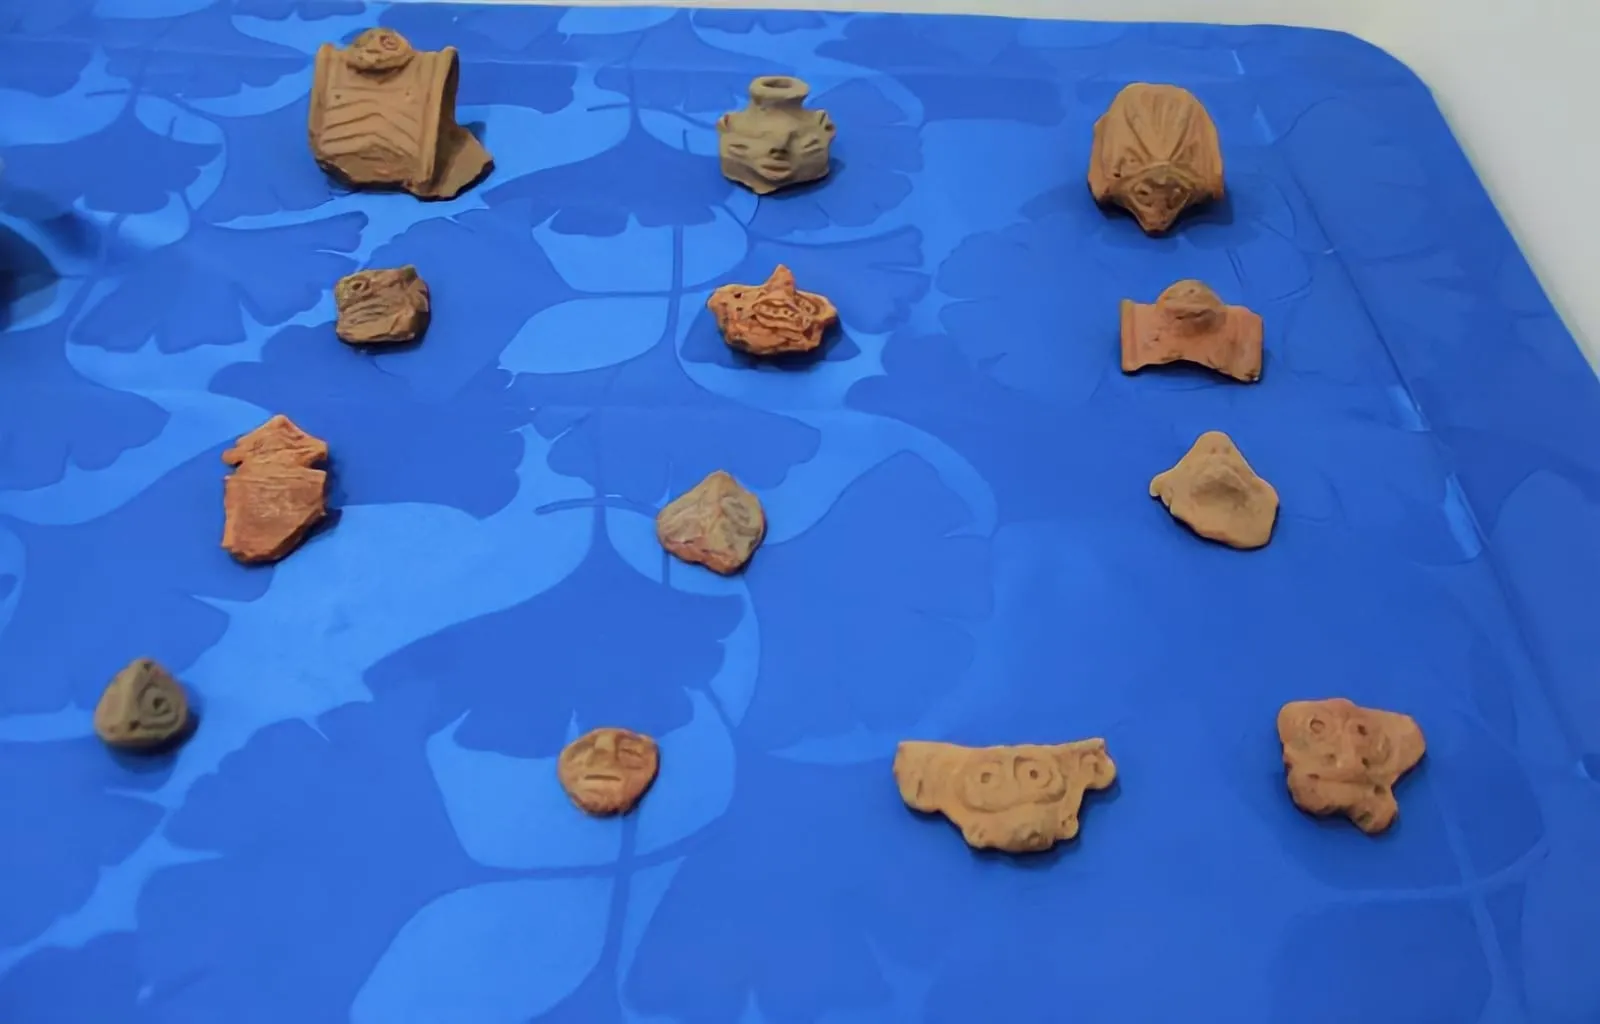 Devuelven a República Dominicana artefactos precolombinos incautados en Puerto Rico